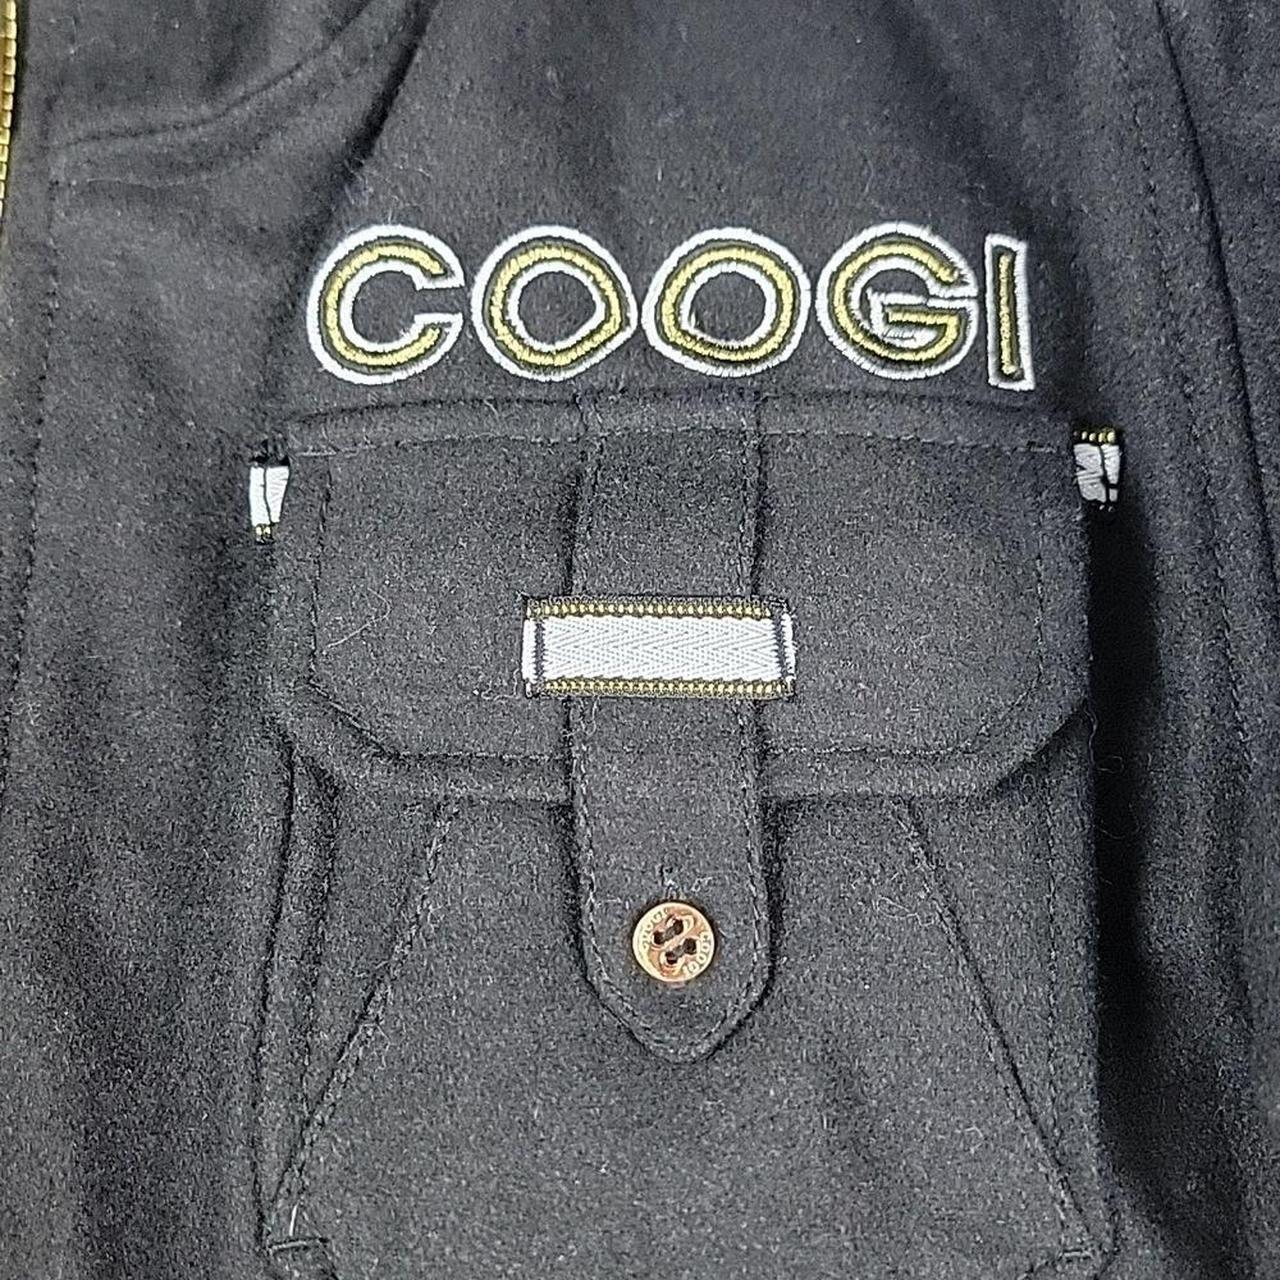 Product Image 2 - COOGI Wool Coat [SIZE MEDIUM]
Great